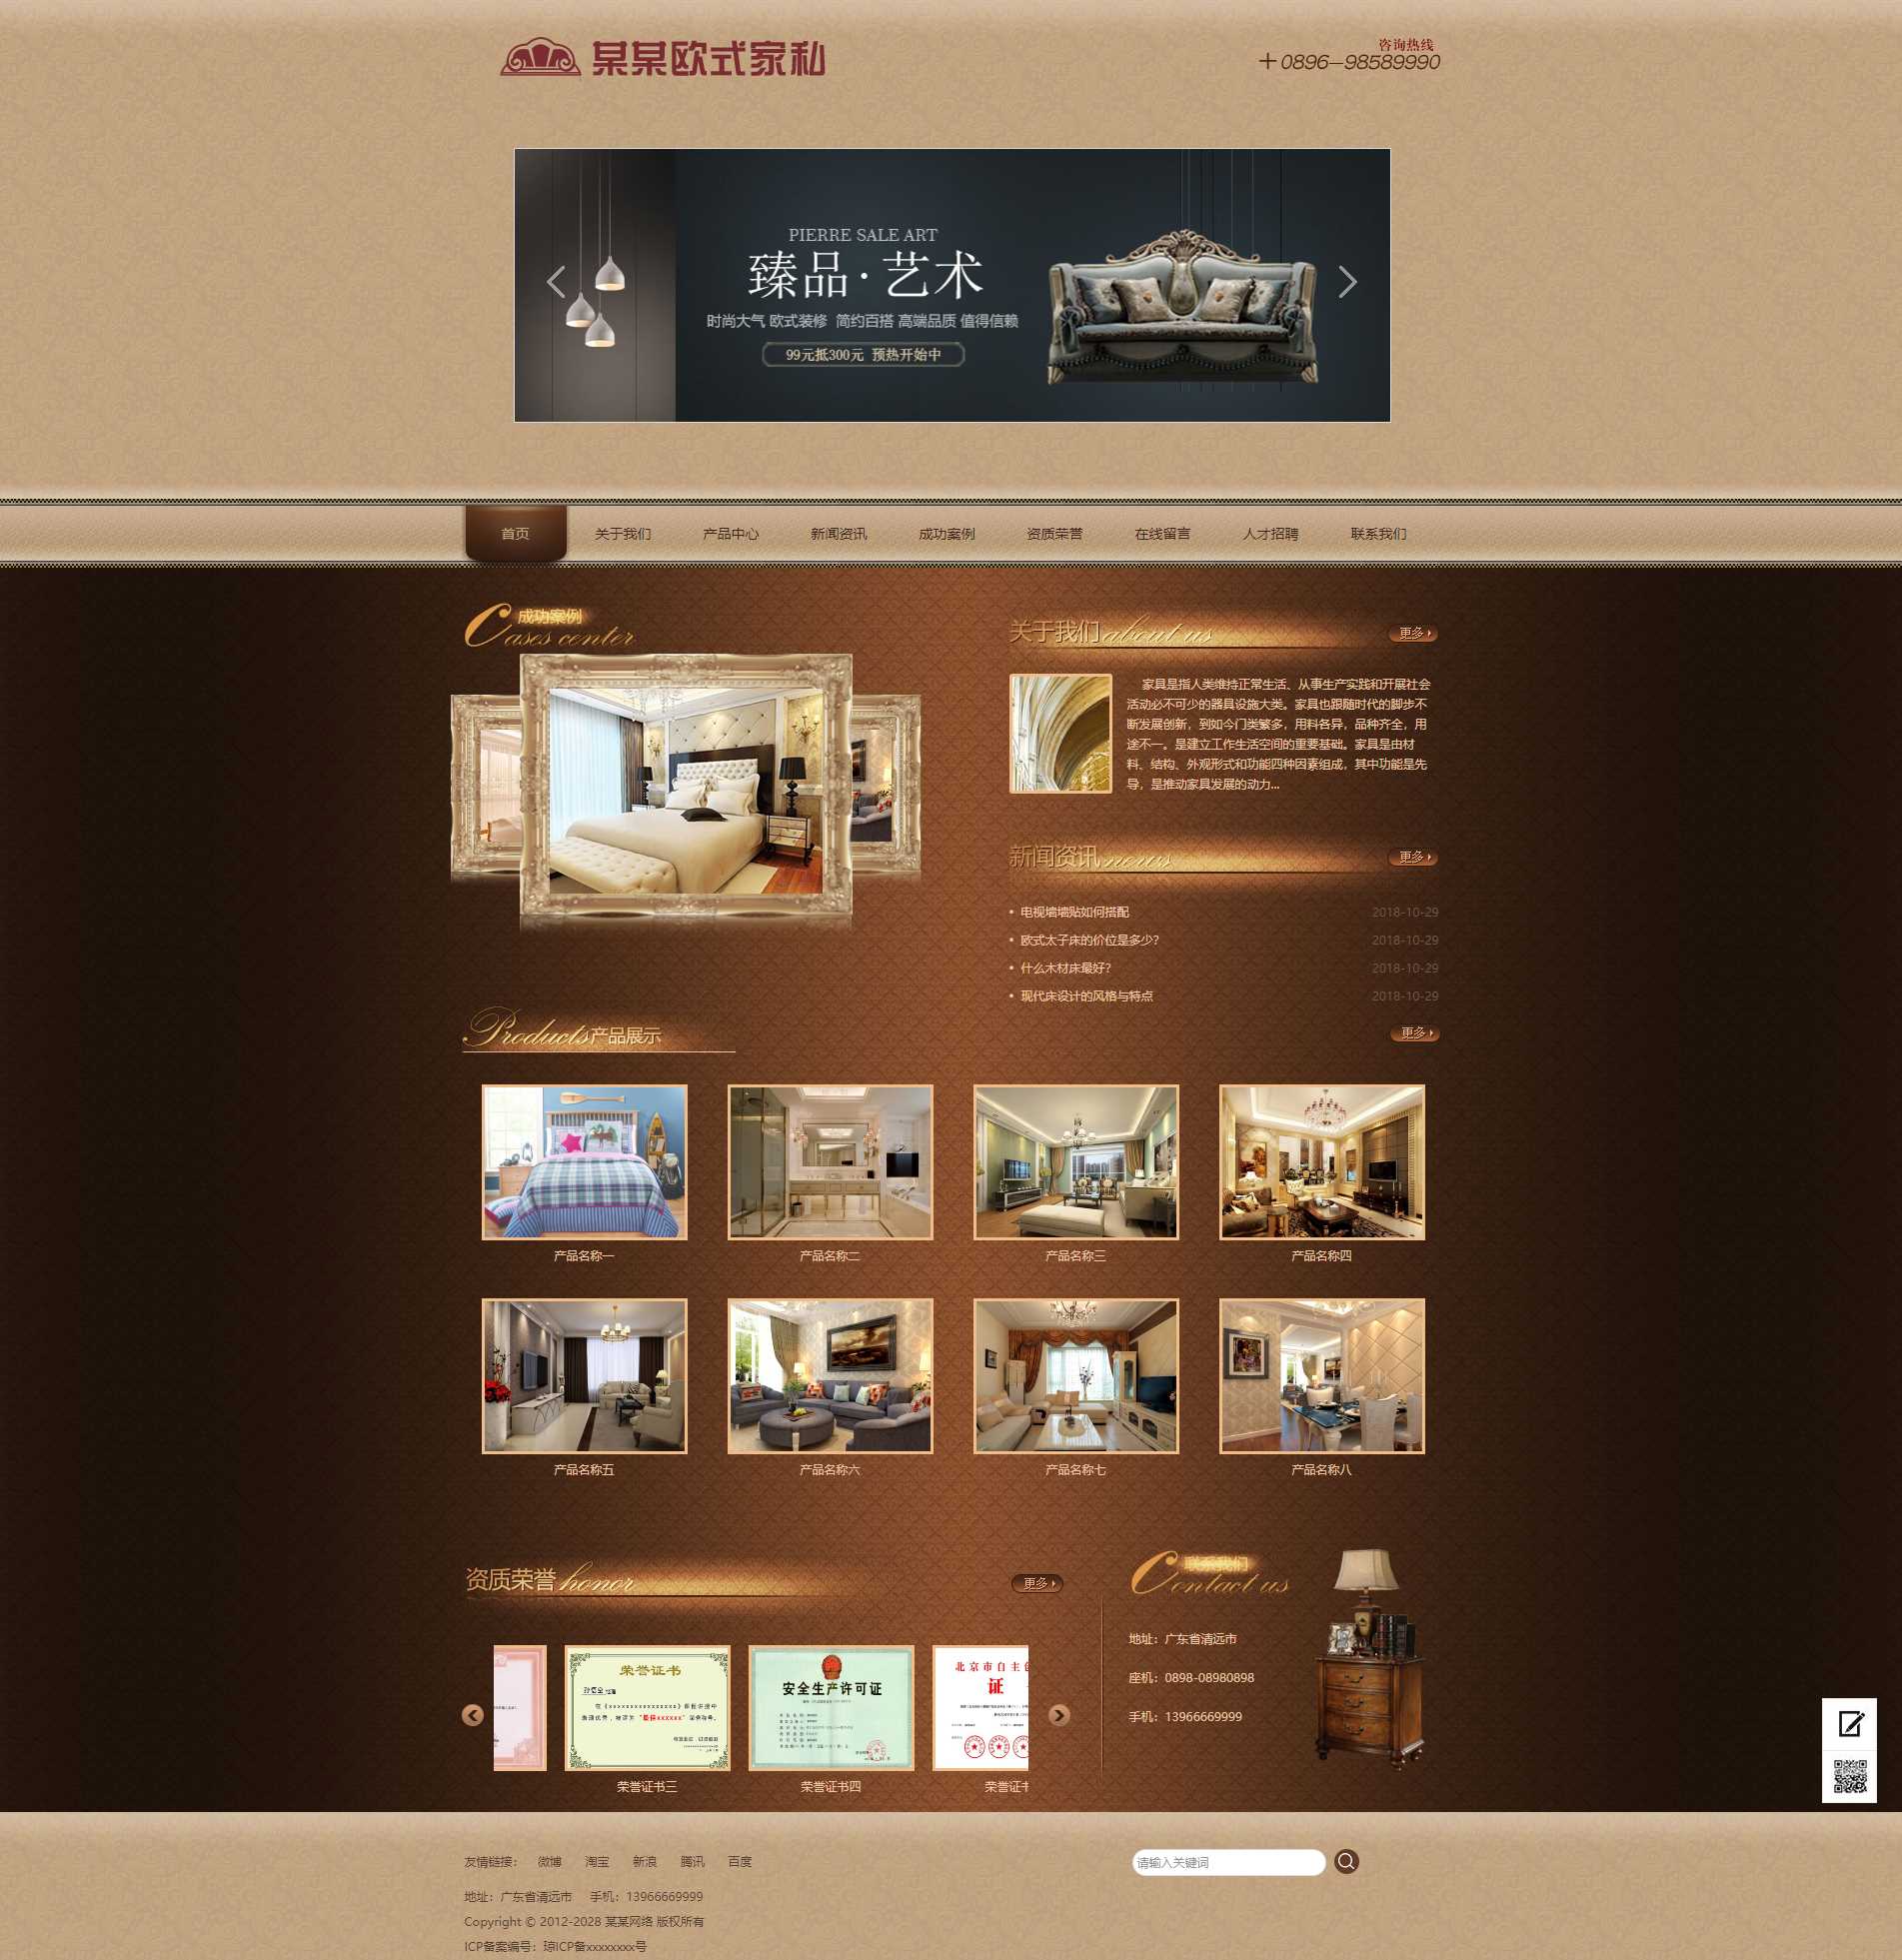 易优cms 家具企业-古典欧式风格网站模版源代码 带手机版